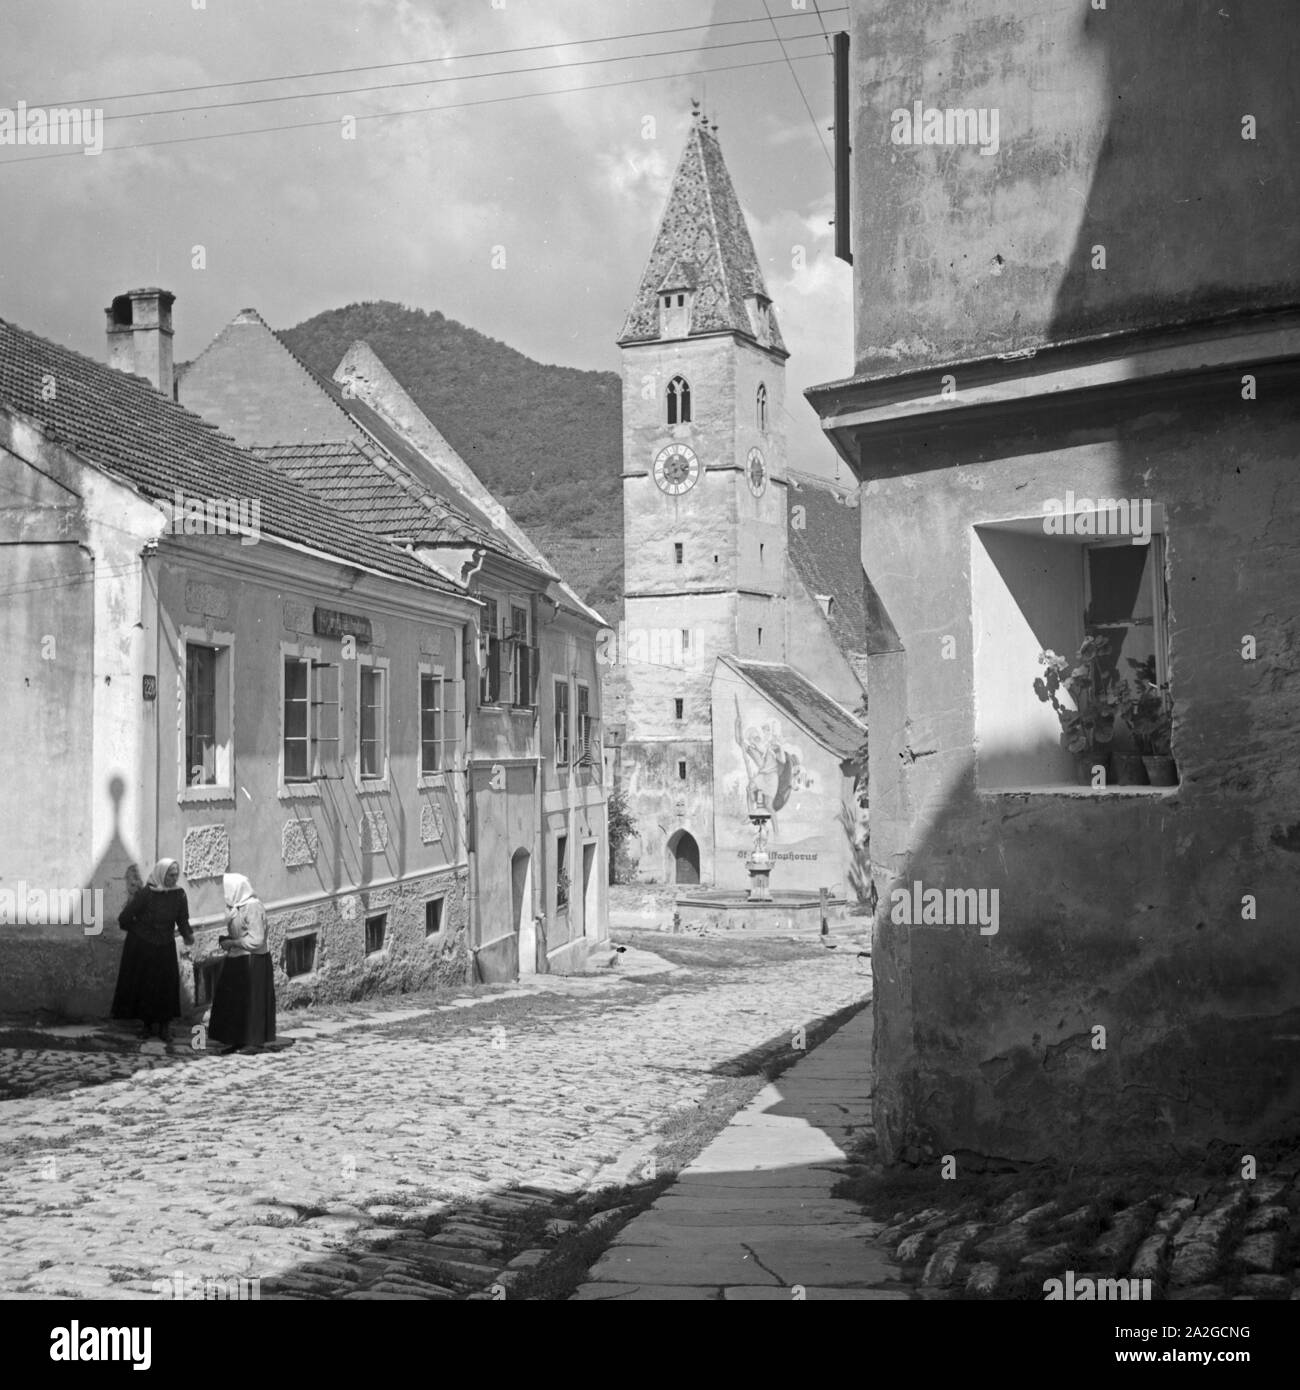 Die Pfarrkirche St. Mauritius in der Gemeinde Sptz in Niederösterreich, 1930er Jahre. St. Maurice's church at Spitz in Lower Austria, 1930s. Stock Photo